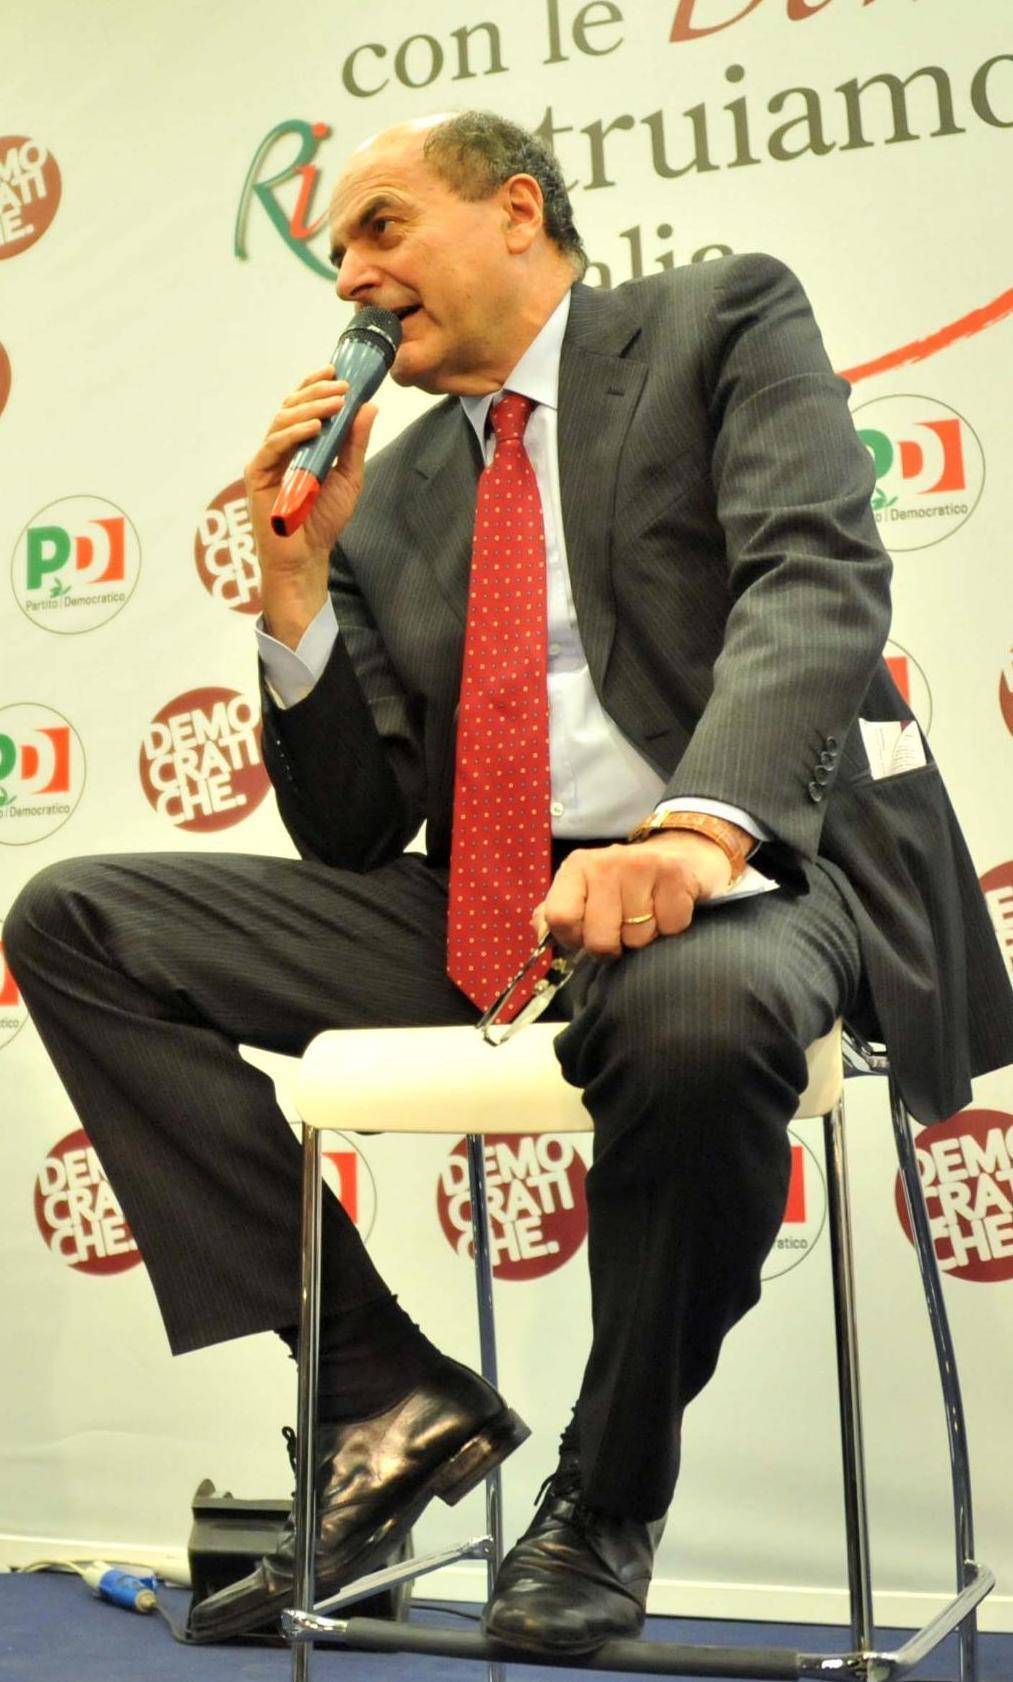 Il Pd prepara la rivolta:  abbandonare Bersani  per non lasciare Monti